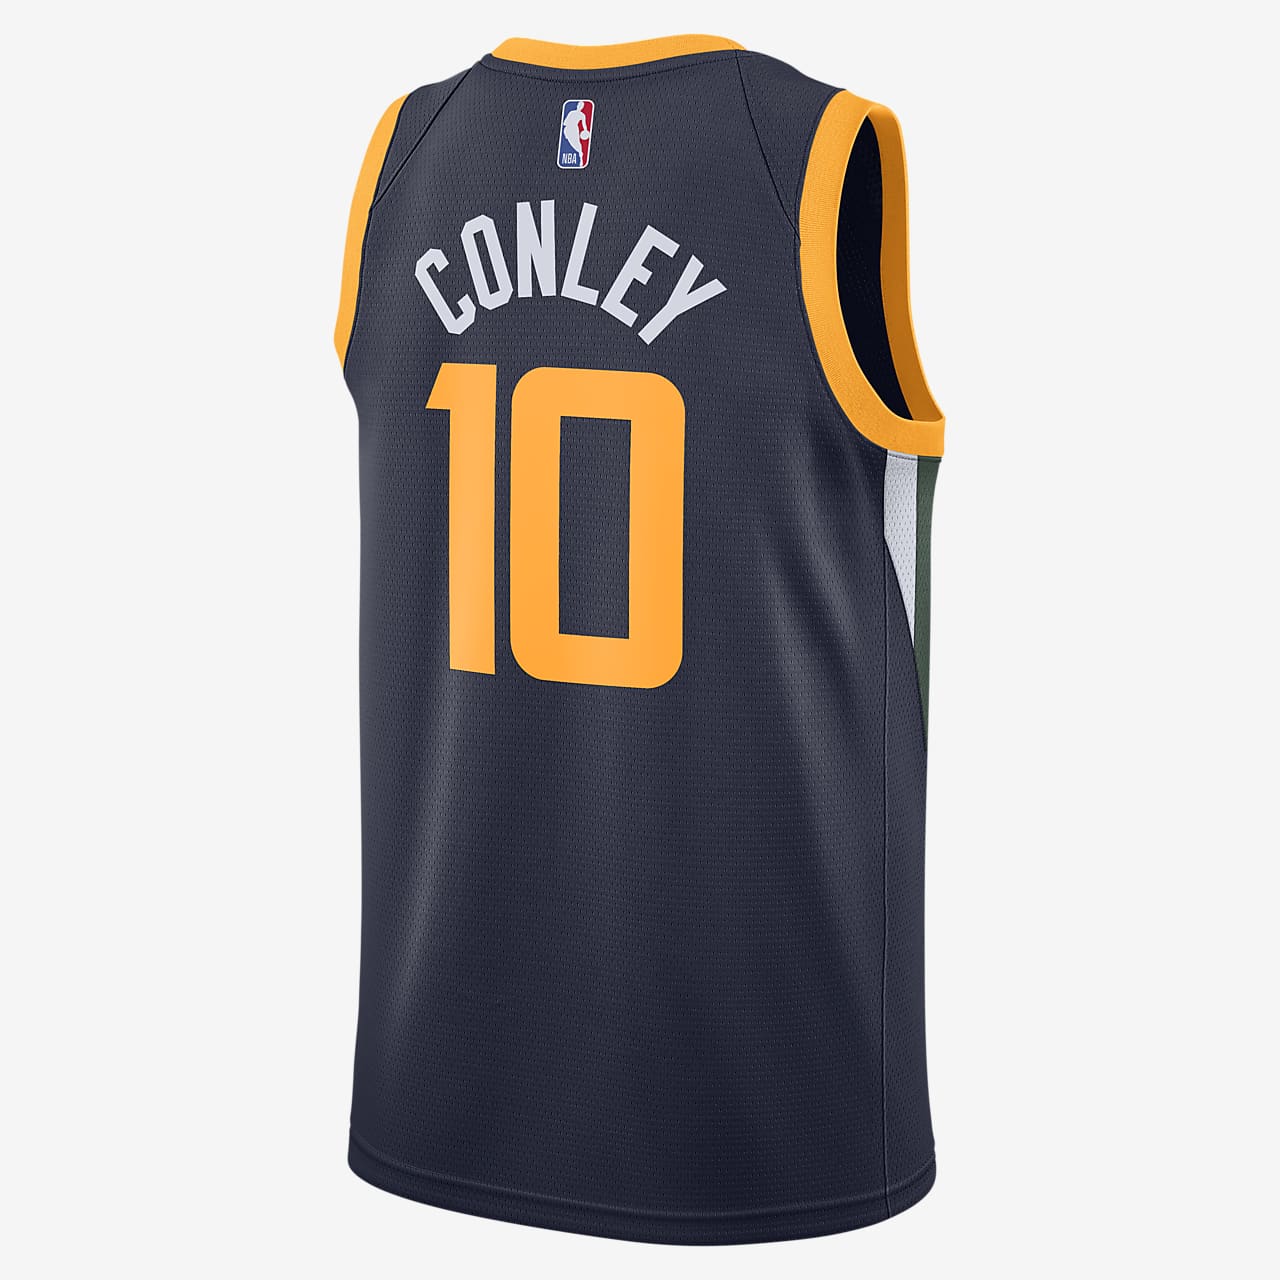 conley jersey